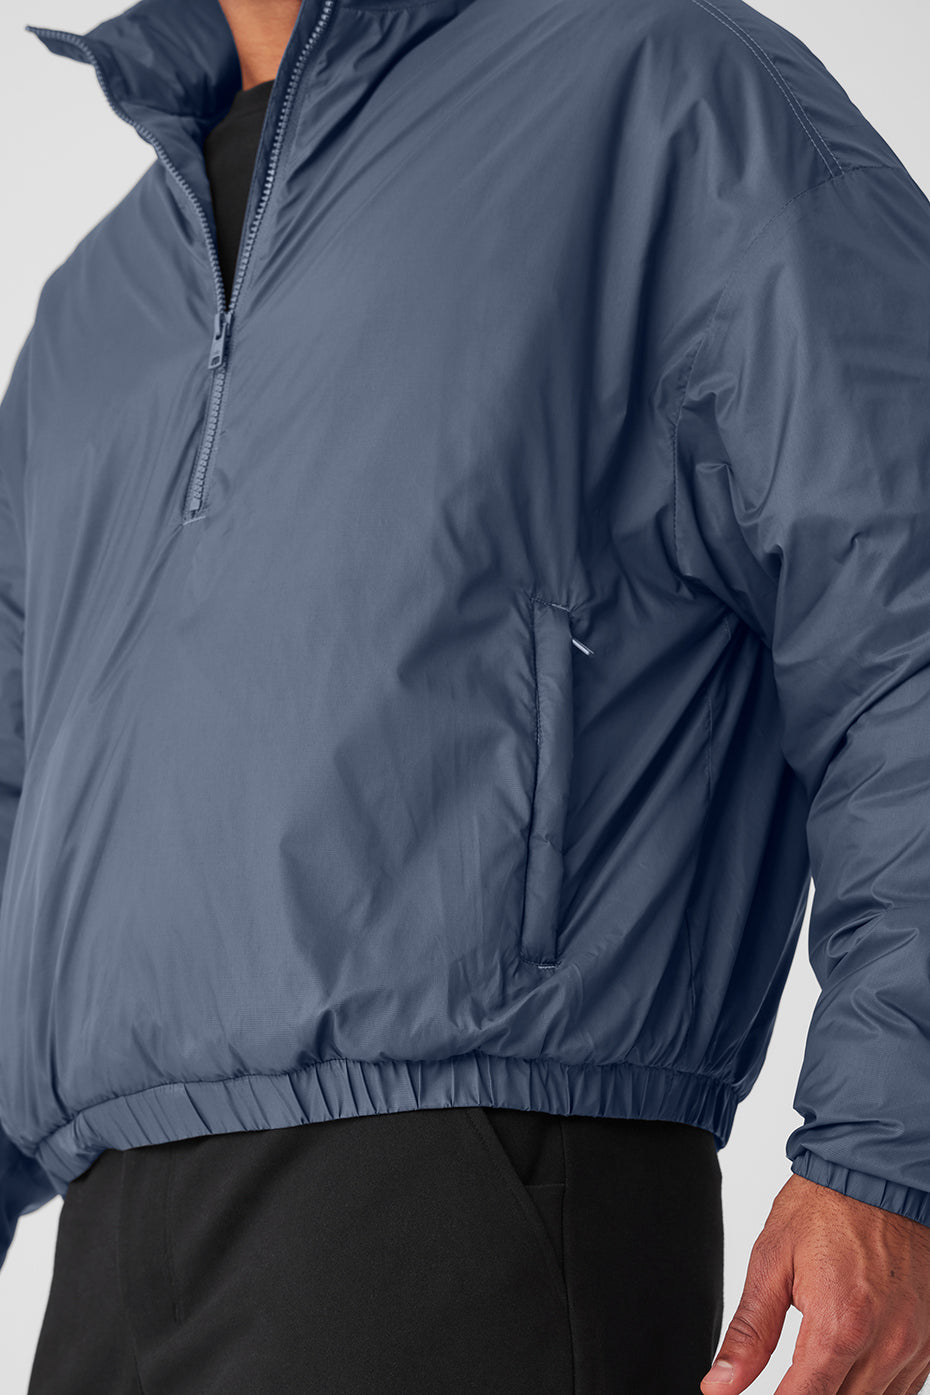 Latitude Light Weight 1/2 Zip Pullover Jacket - Bluestone